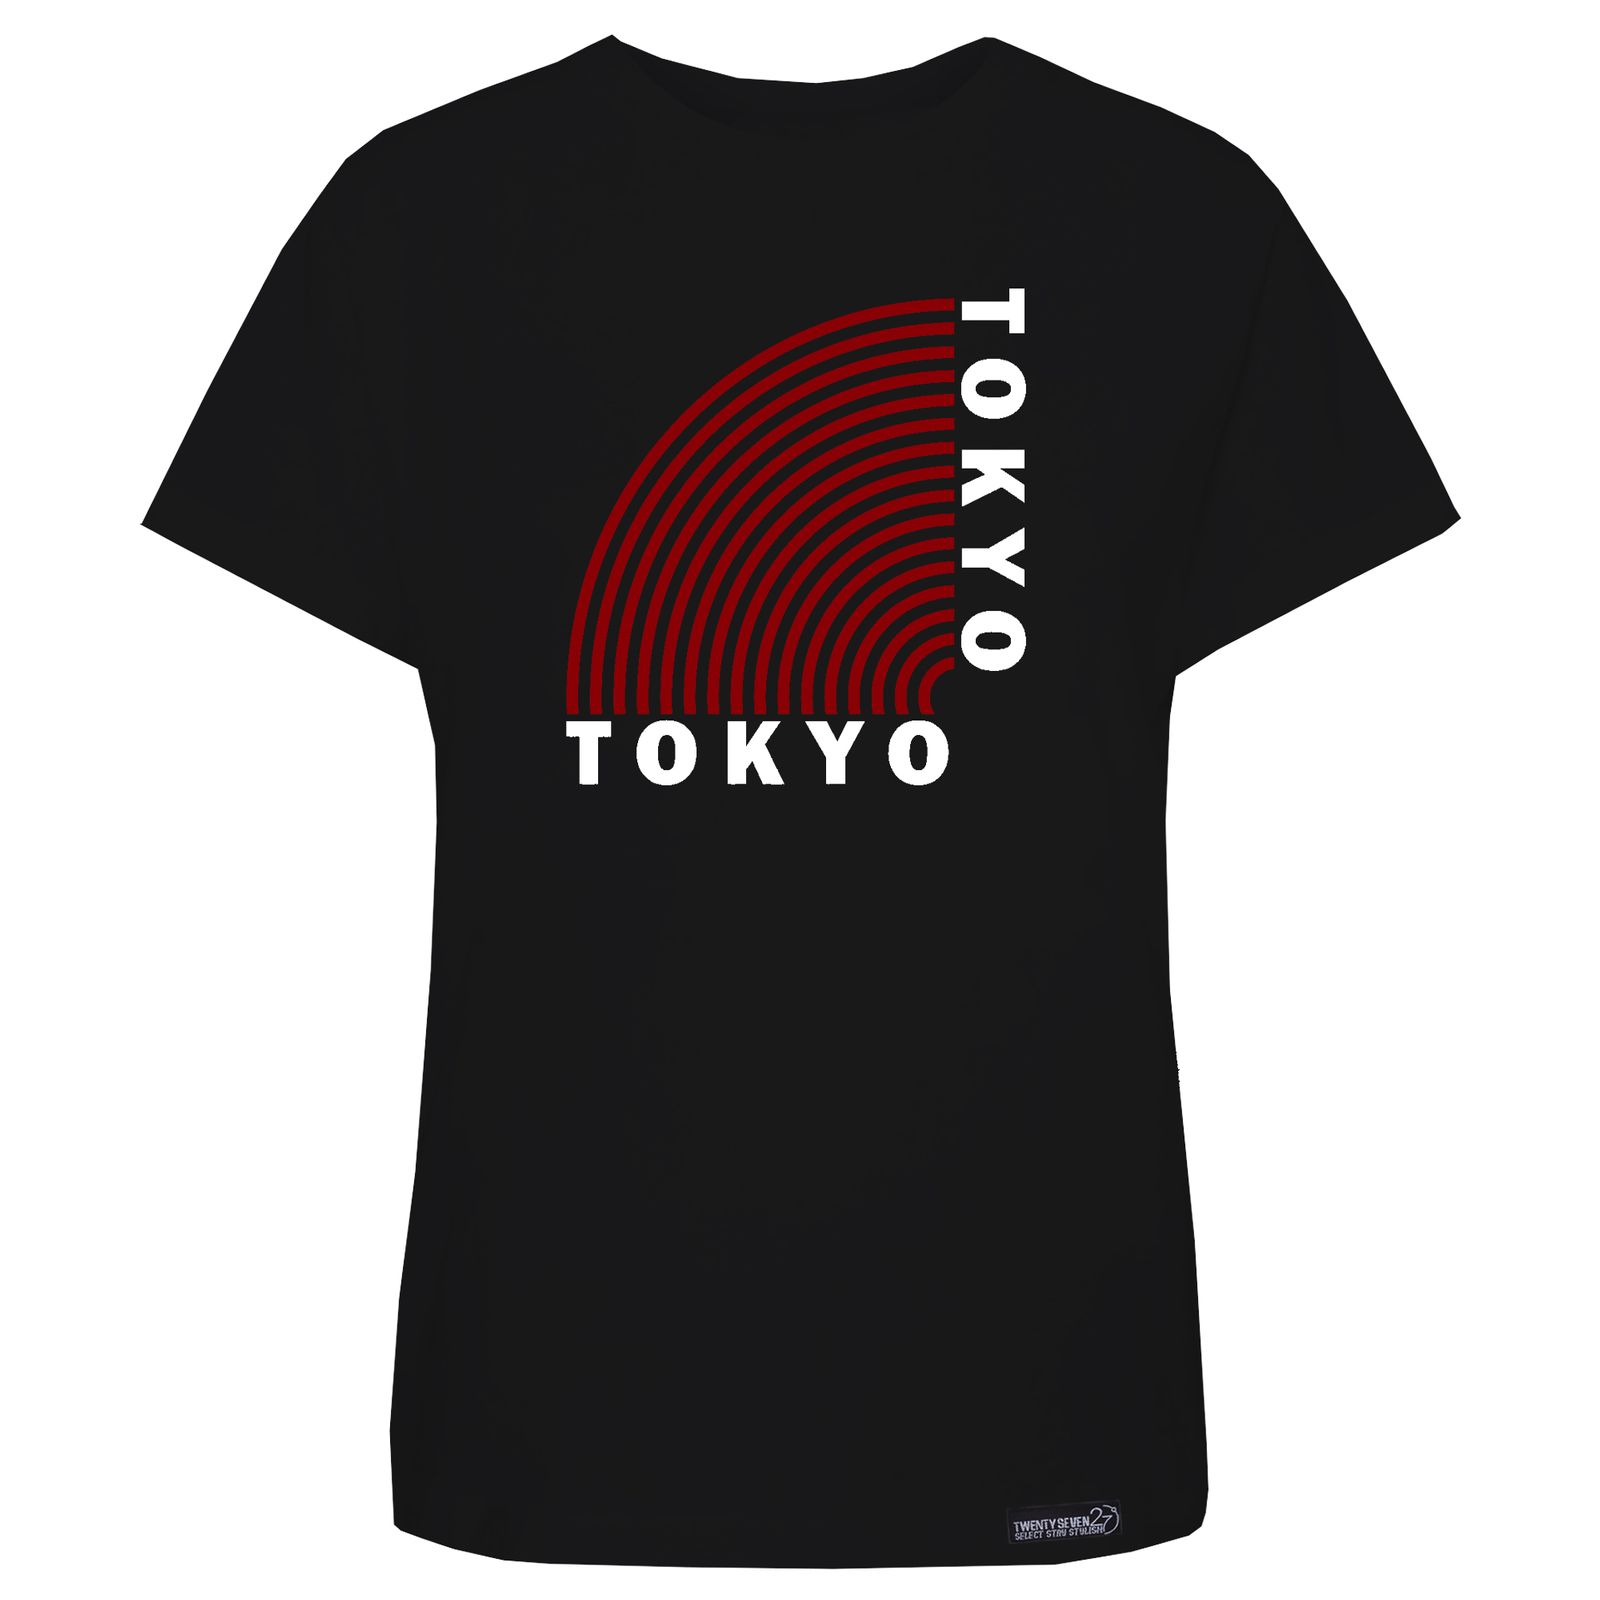 تی شرت آستین کوتاه زنانه 27 مدل Tokyo کد KV251 رنگ مشکی -  - 1